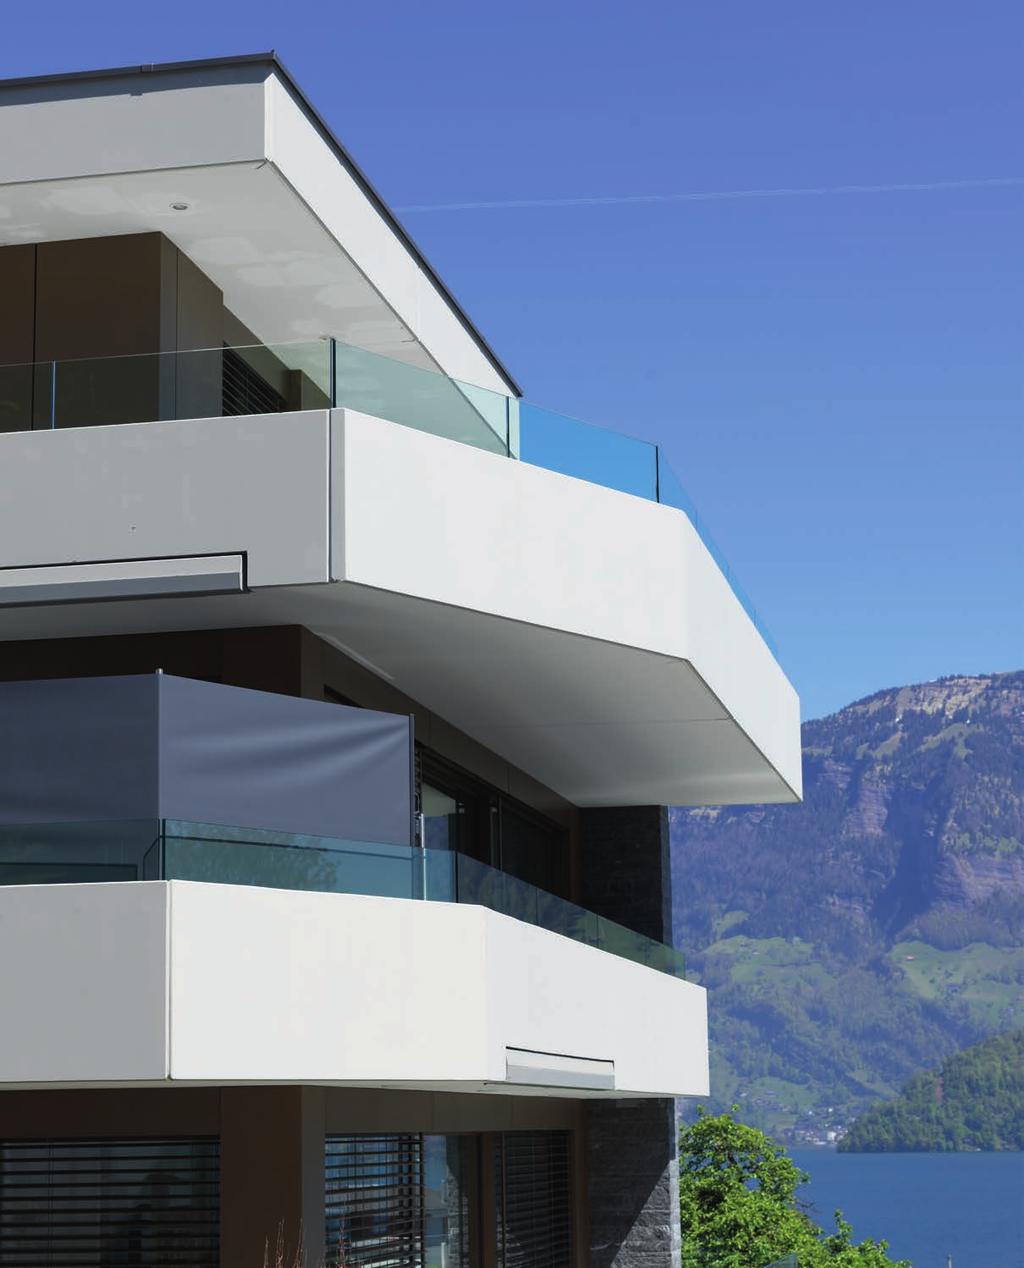 Oggetto di riferimento Condominio Oberbächli, Ridlistrase 30 a Beckenried Oberbächli è uno dei primi casi in Svizzera di condominio con lo standard minergie A che coniuga varie fonti di energia